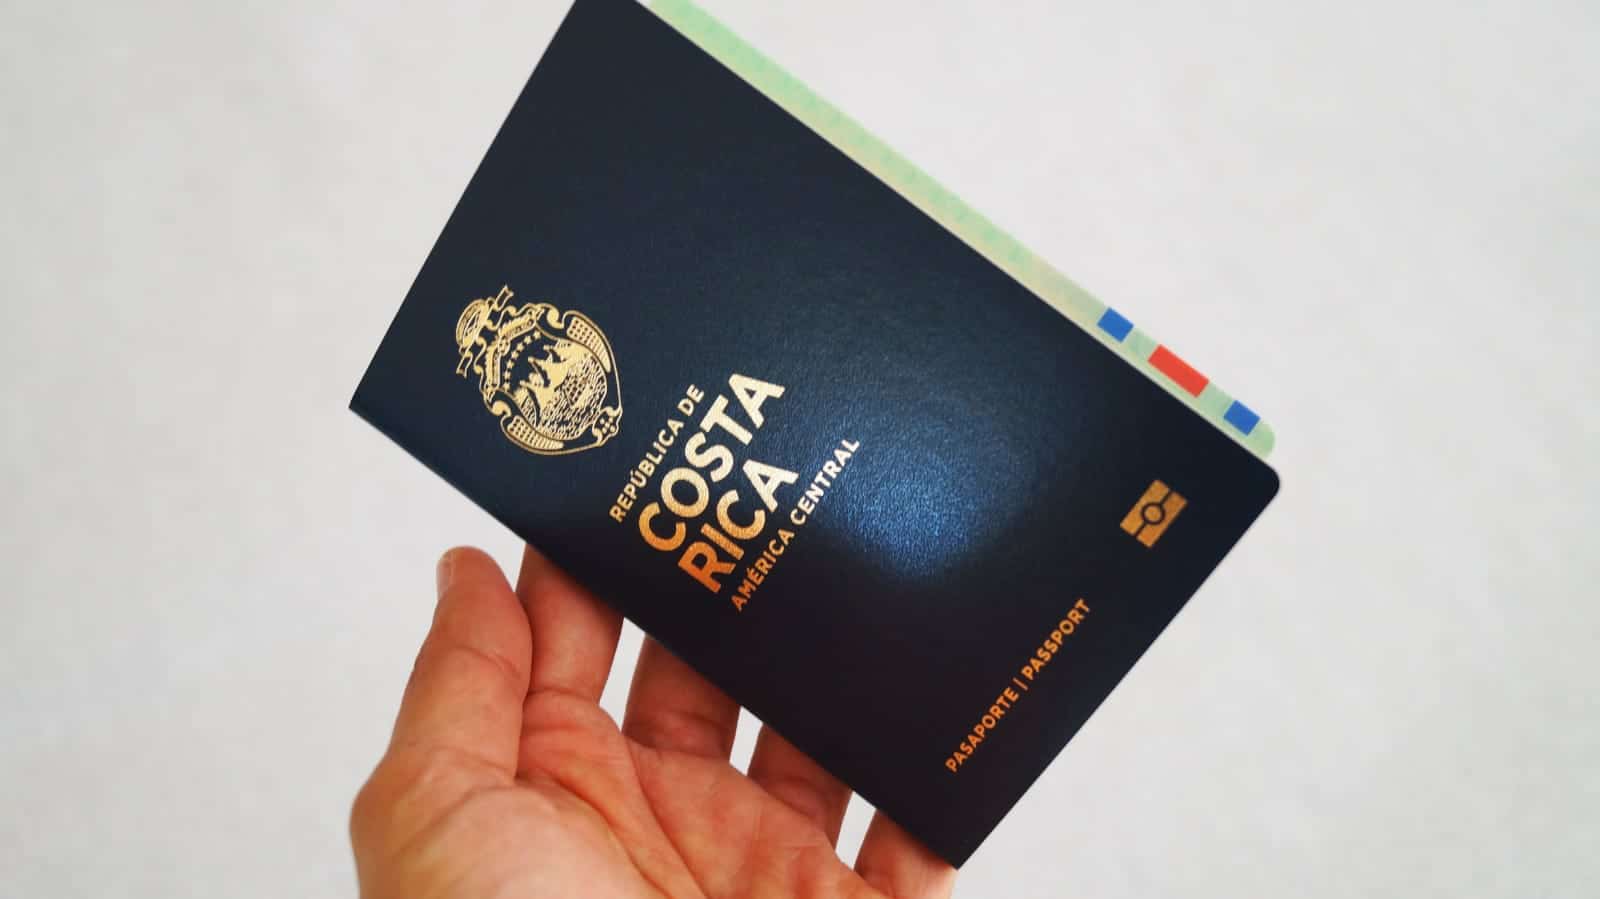 Pasaporte costarricense perdería beneficios por facilidad con que lo obtienen delincuentes extranjeros, advierte OIJ